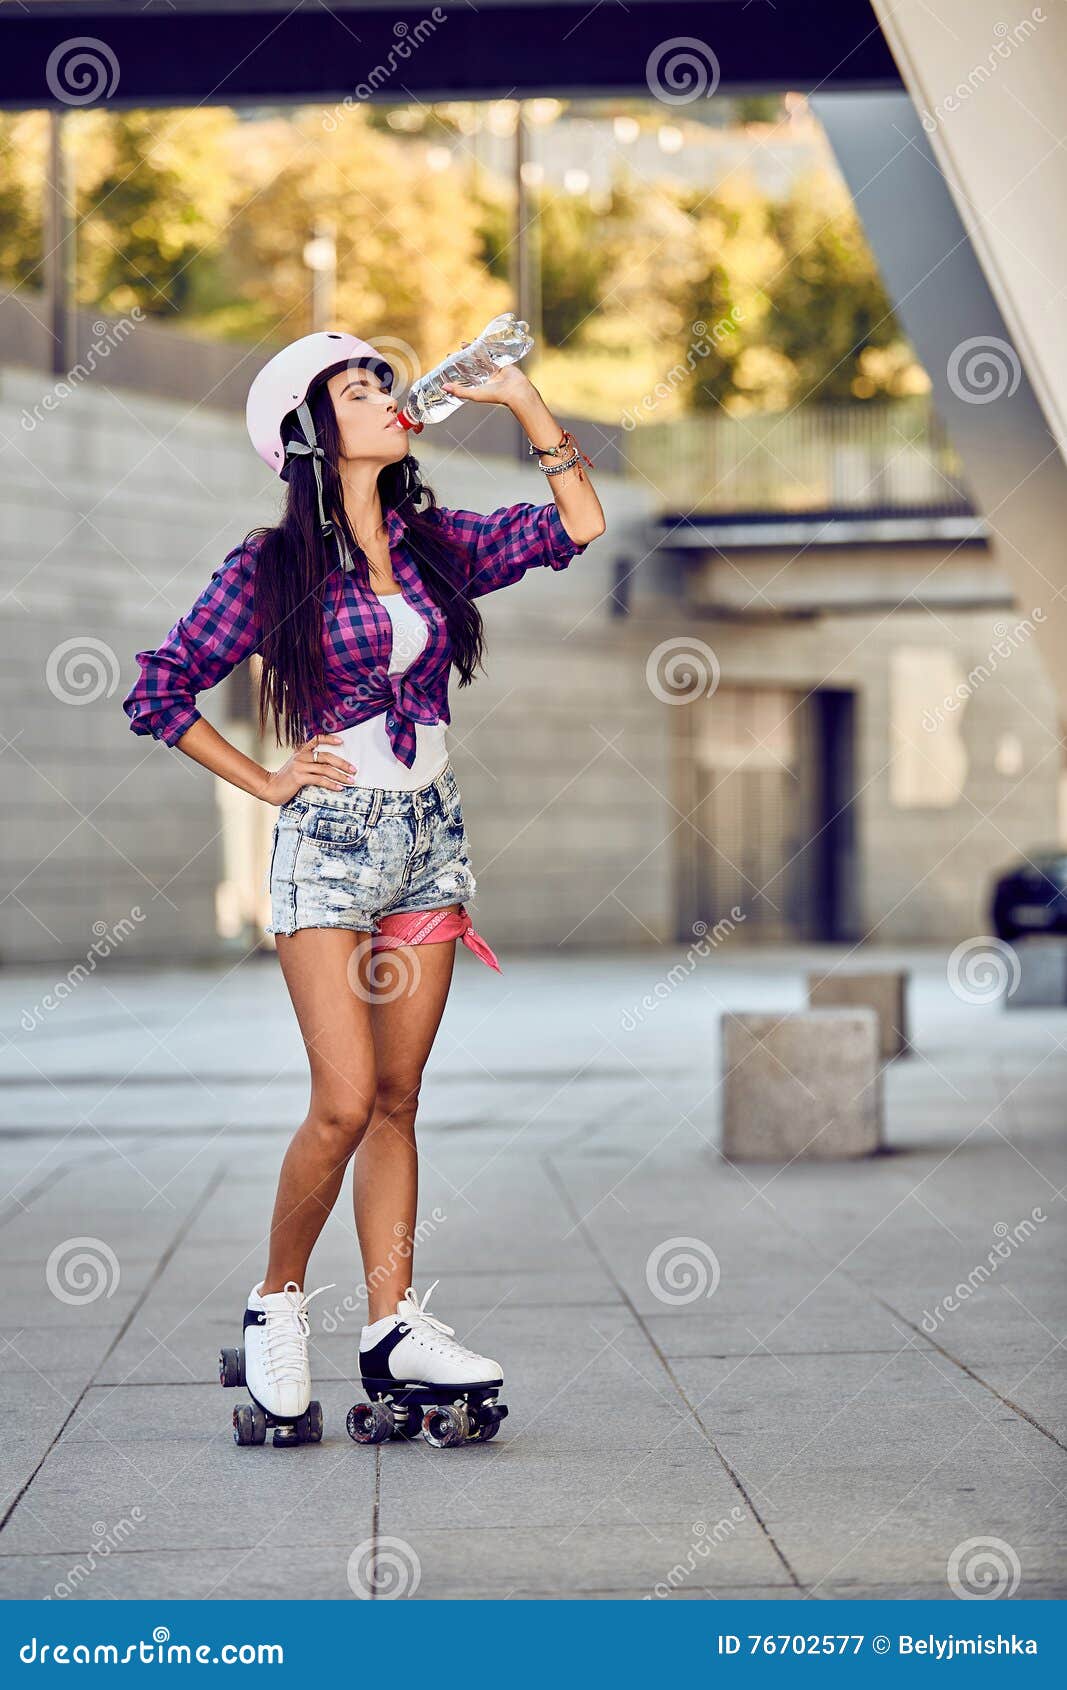 Jonge Vrouw Op Rolschaatsen En Helm Drinkwater Stock Afbeelding - Image of concreet: 76702577